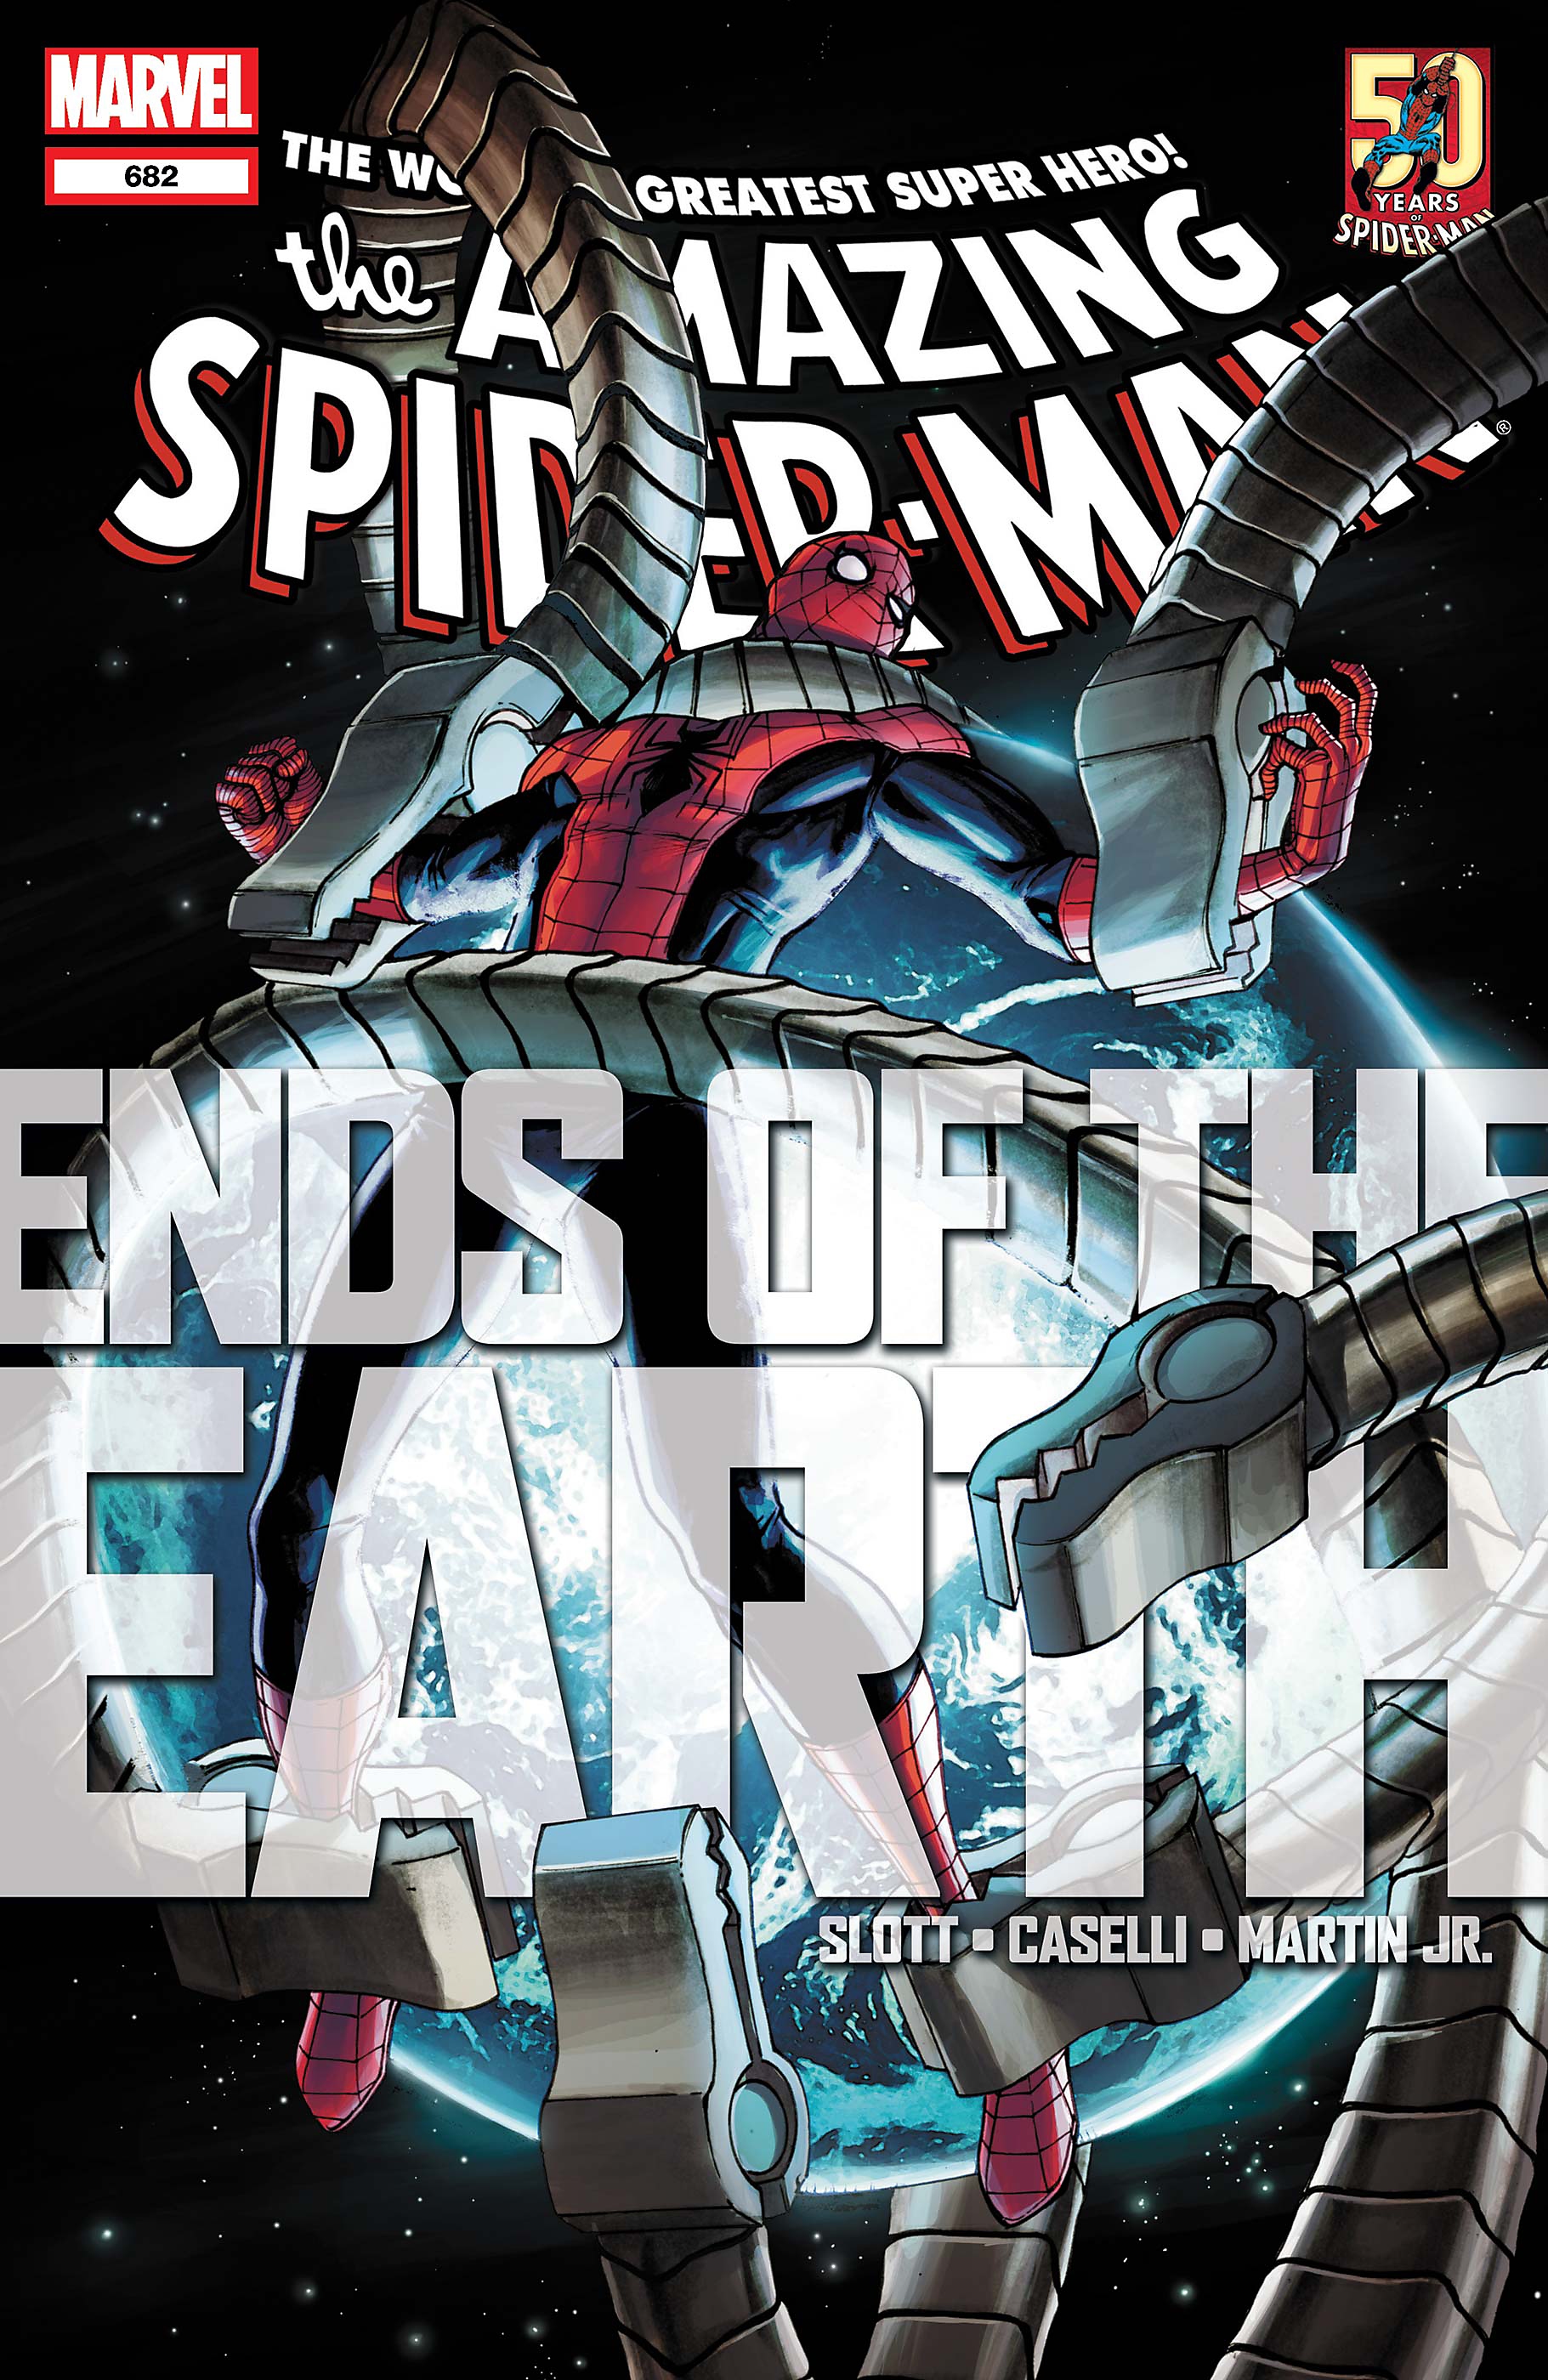 spider-man silver lining, læseliste tegneserie